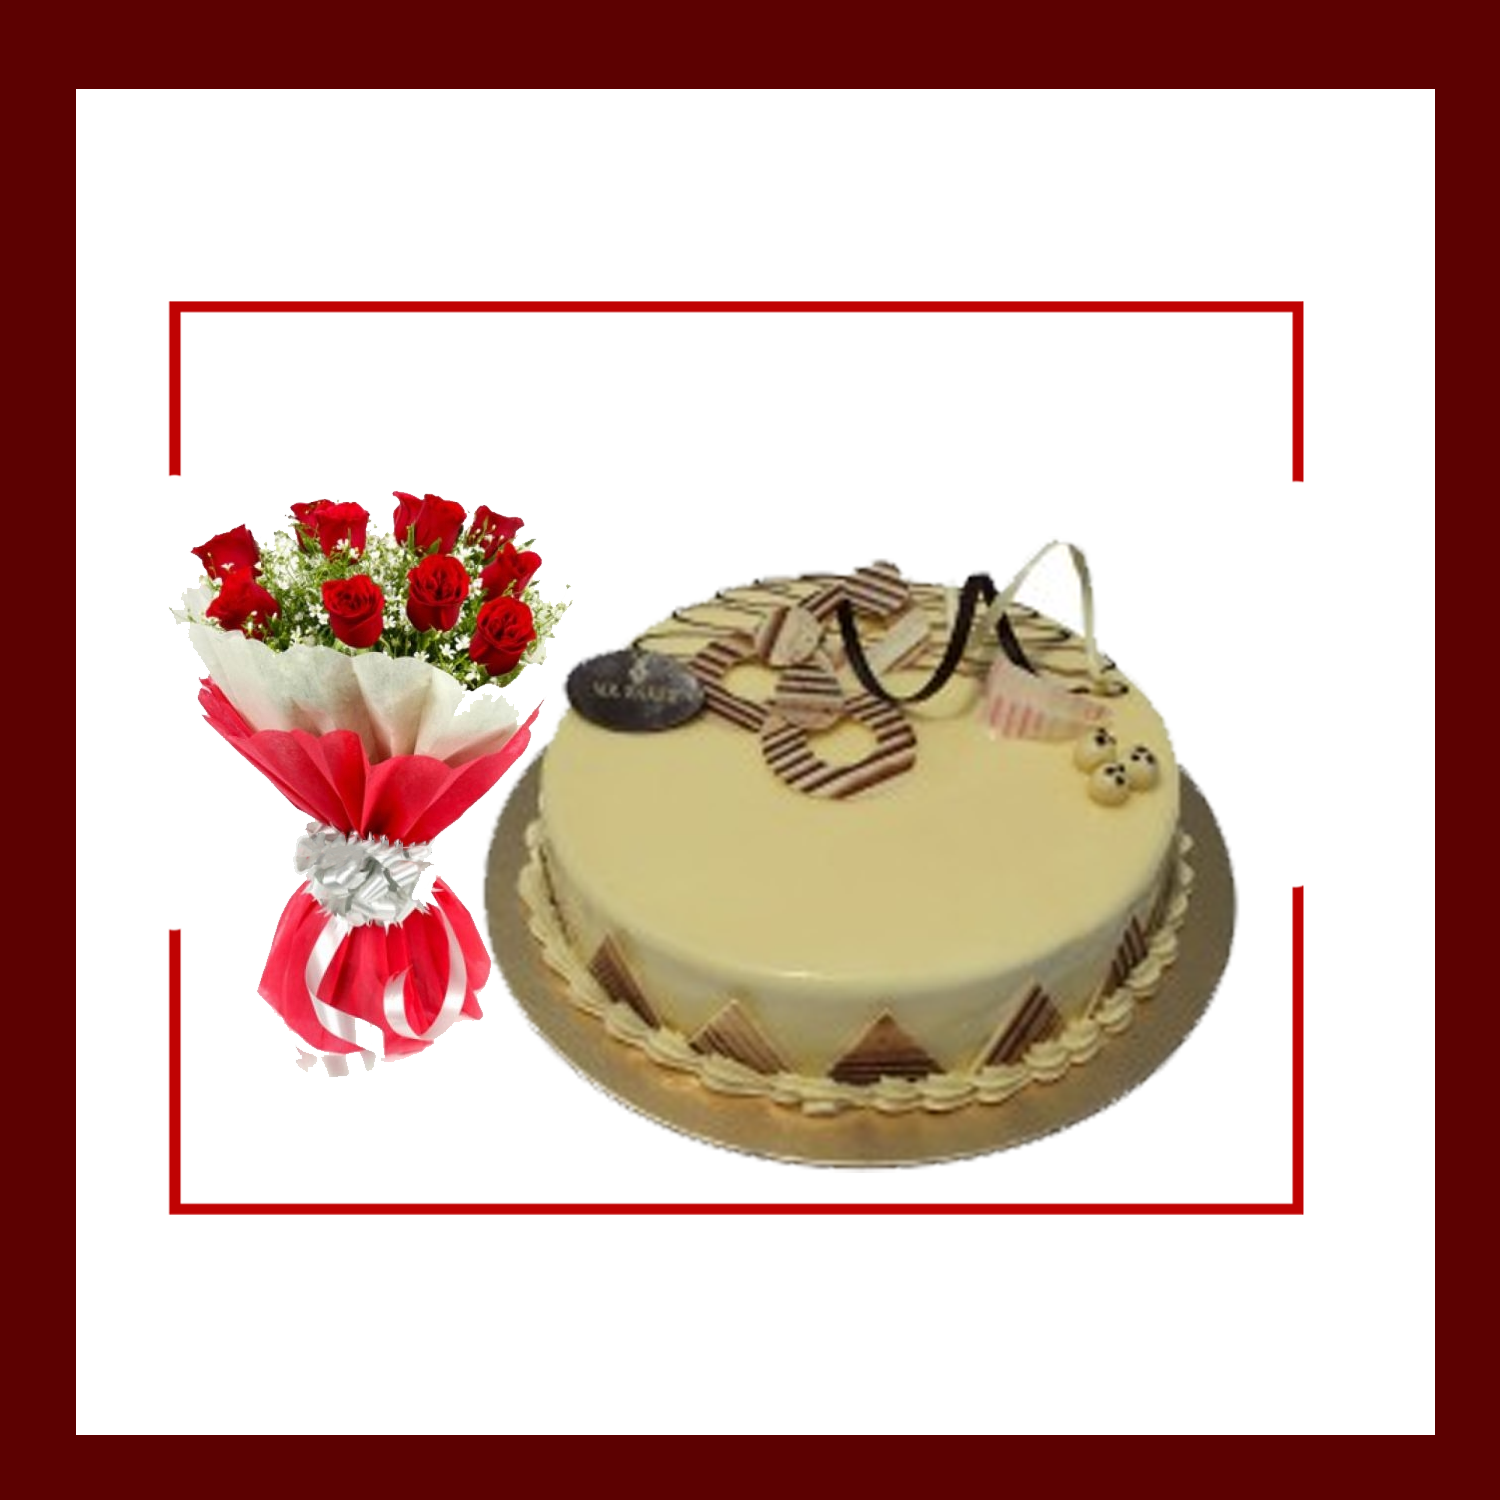 Cake & Flower Combo 12